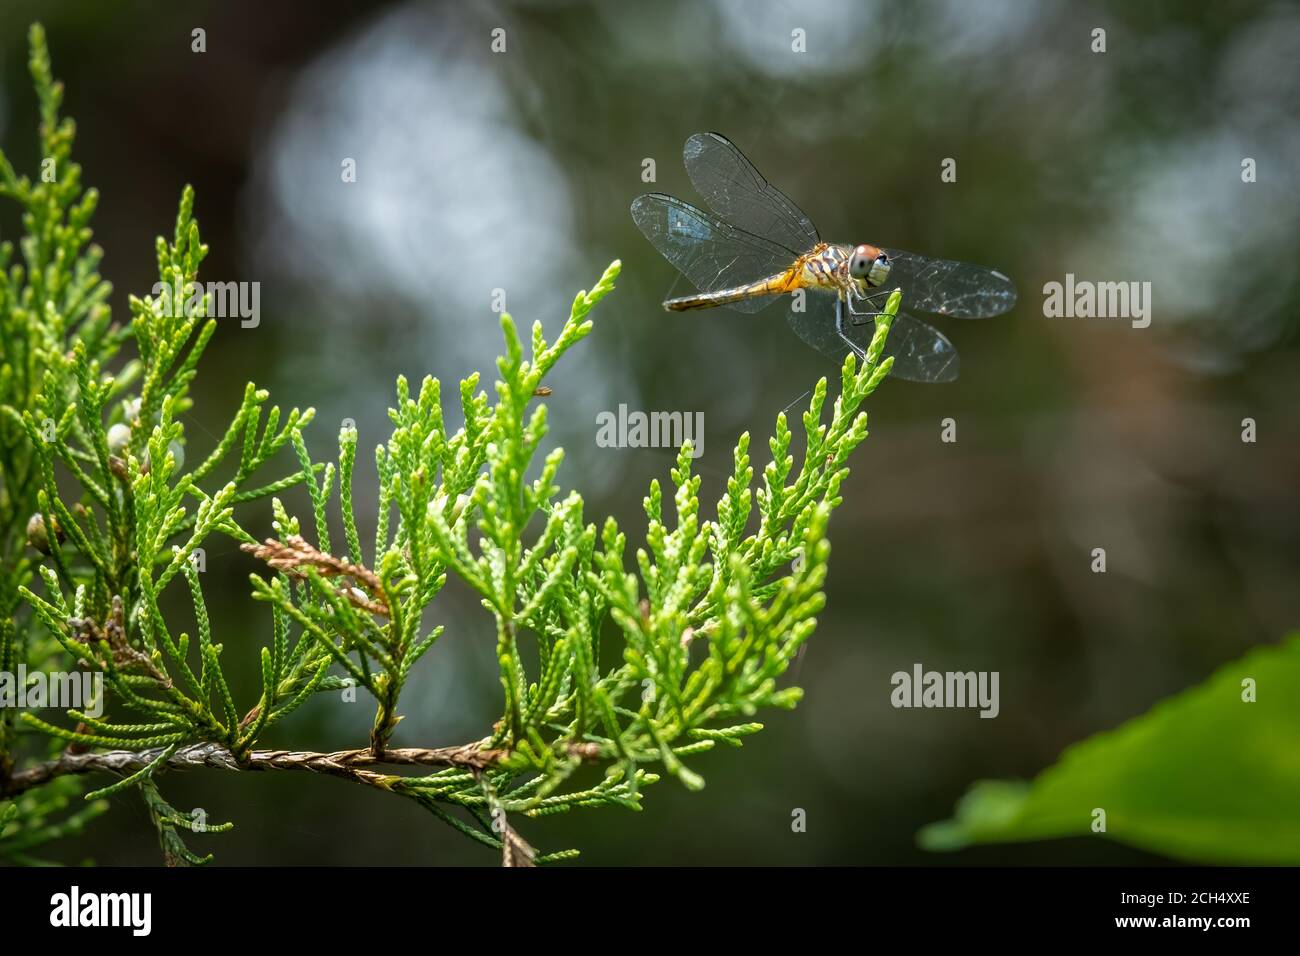 Une femelle de Dasher bleu (Pachydipax longipennis) perche sur une branche de cèdre. Raleigh, Caroline du Nord. Banque D'Images